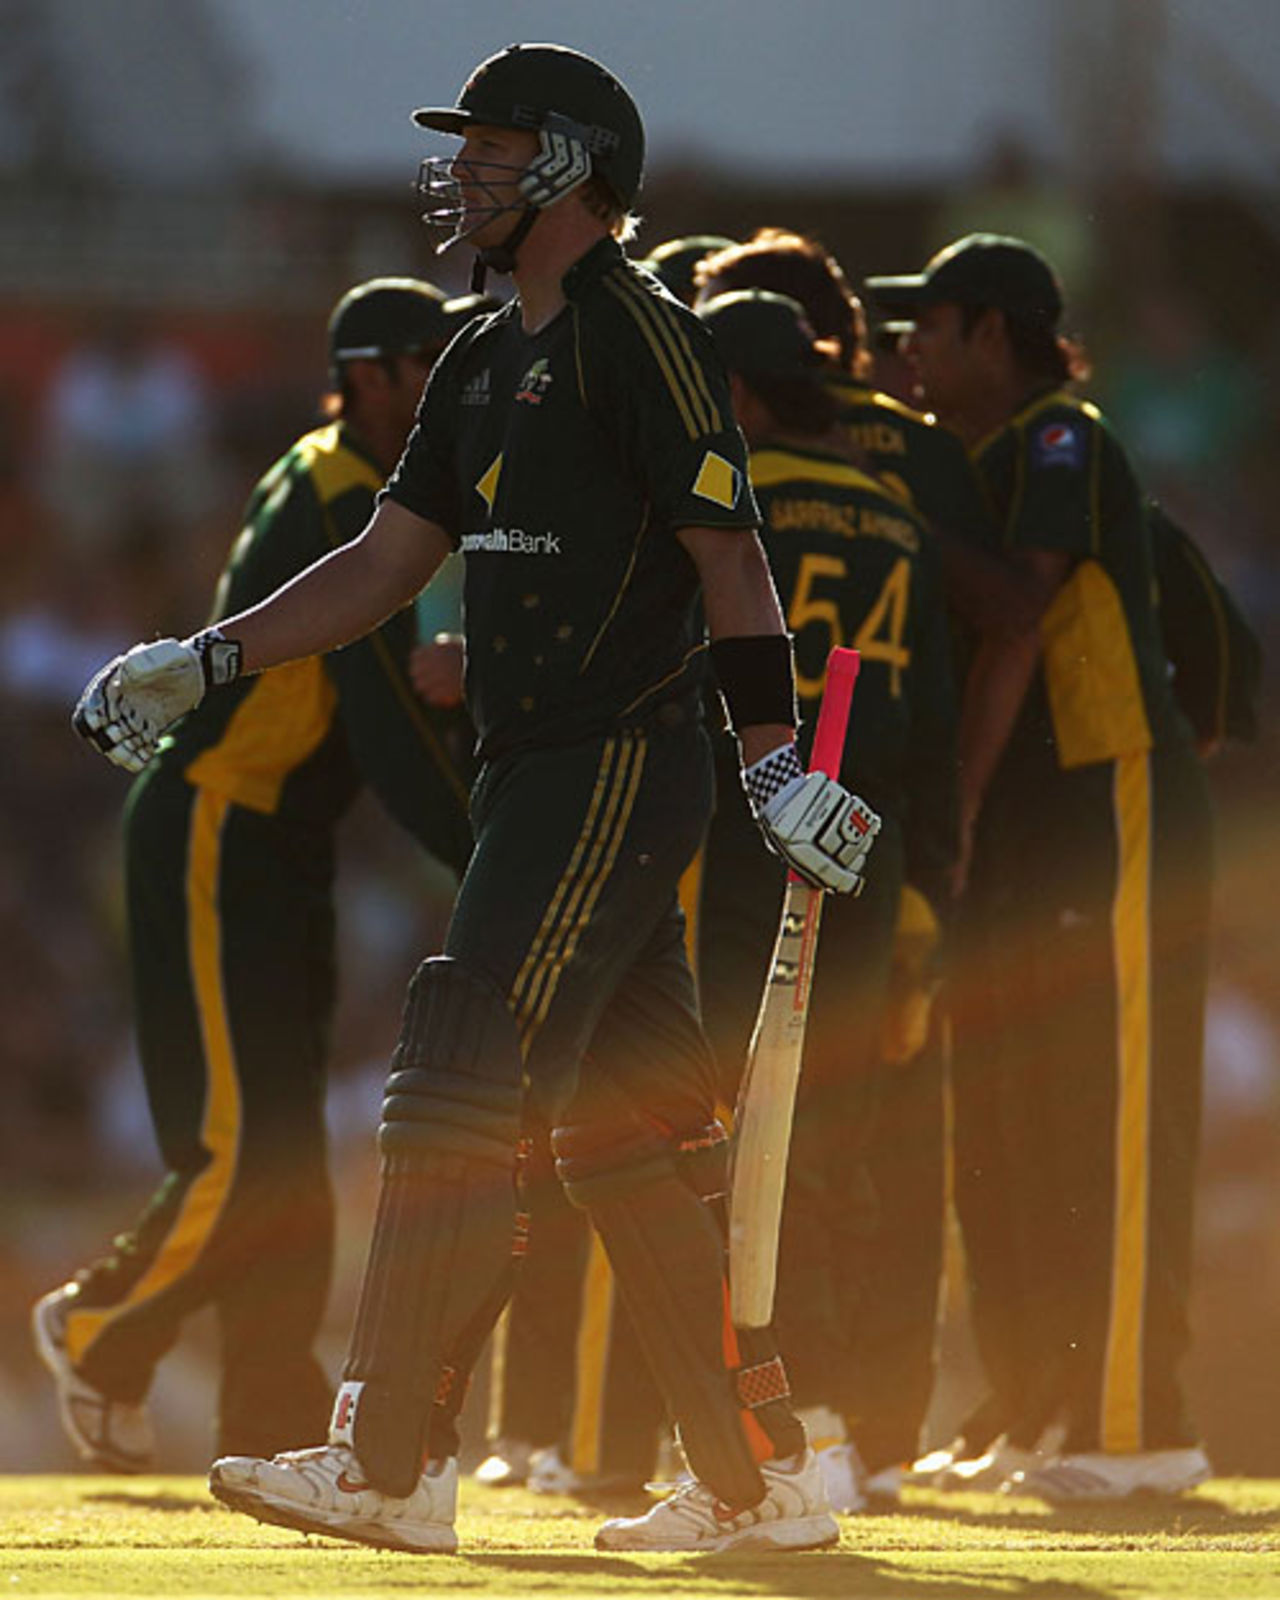 Cameron White makes the long walk back, Australia v Pakistan, 5th ODI, Perth, January 31, 2010